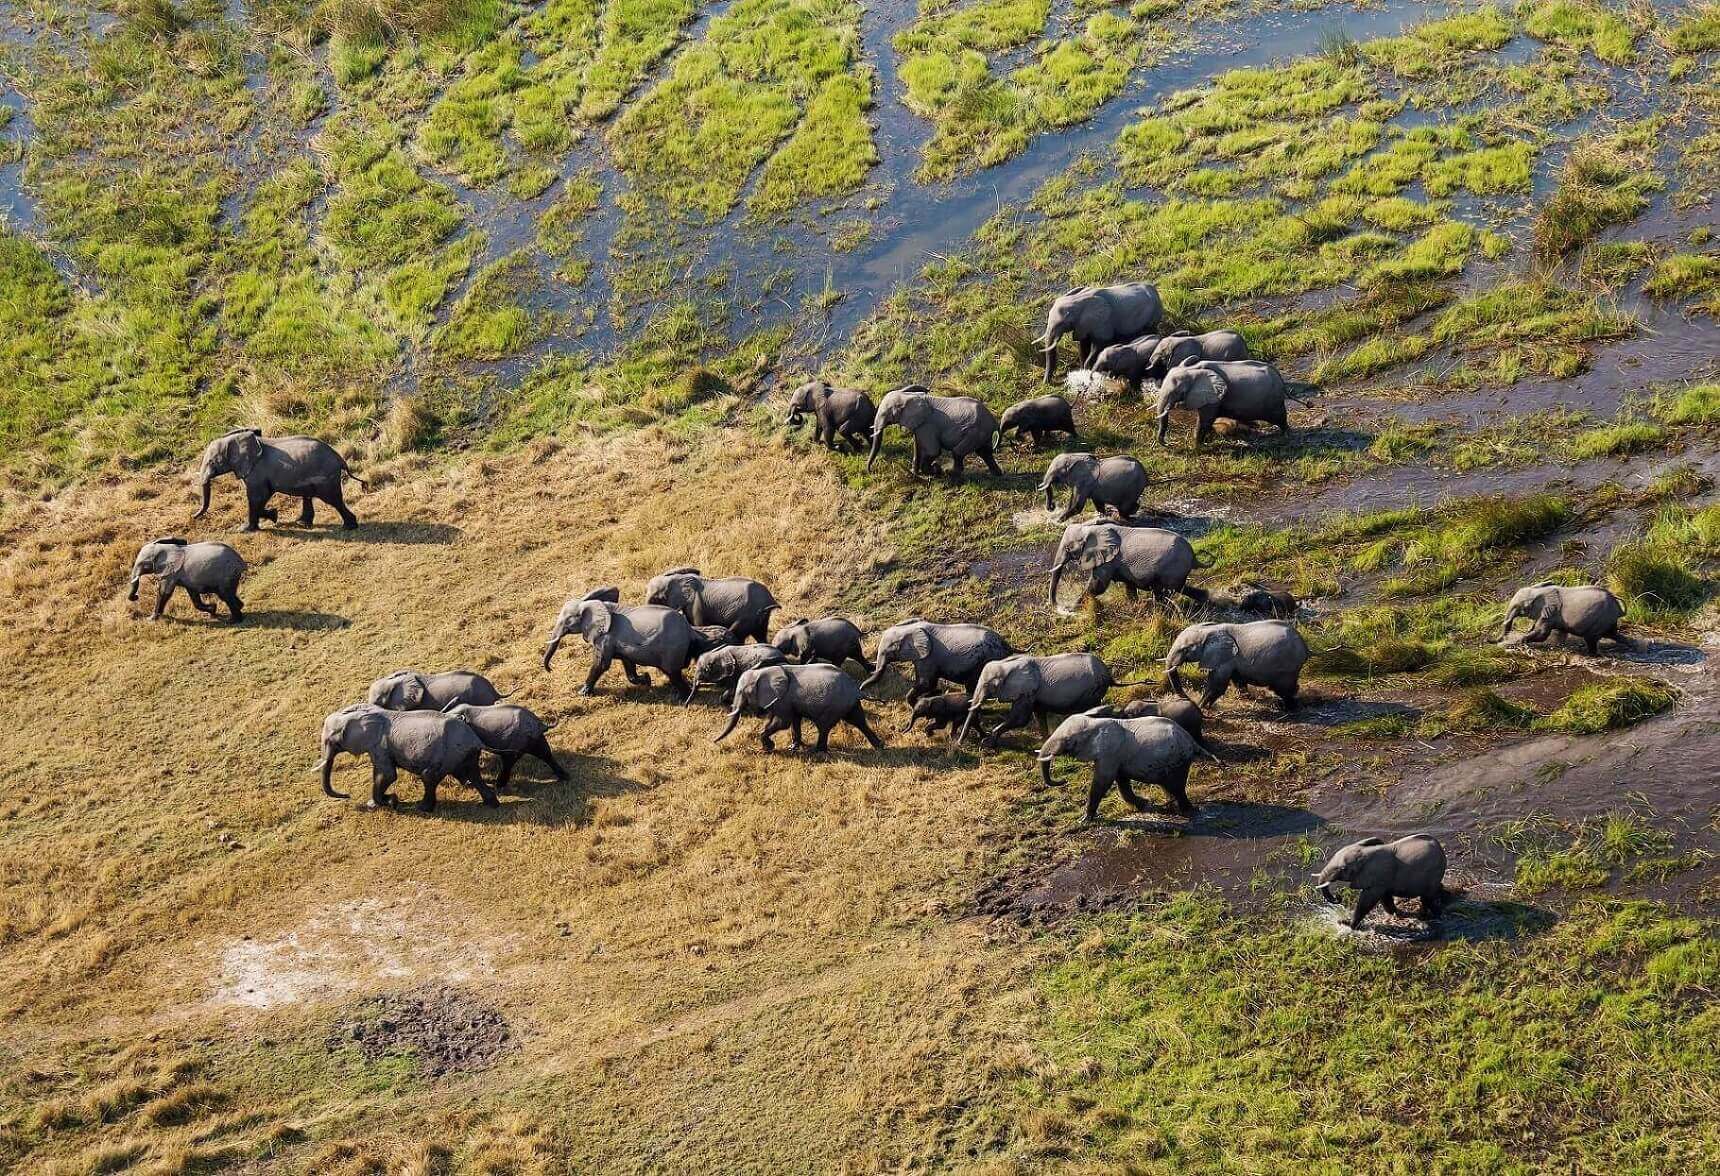 Elephants in Okavango Delta in Botswana